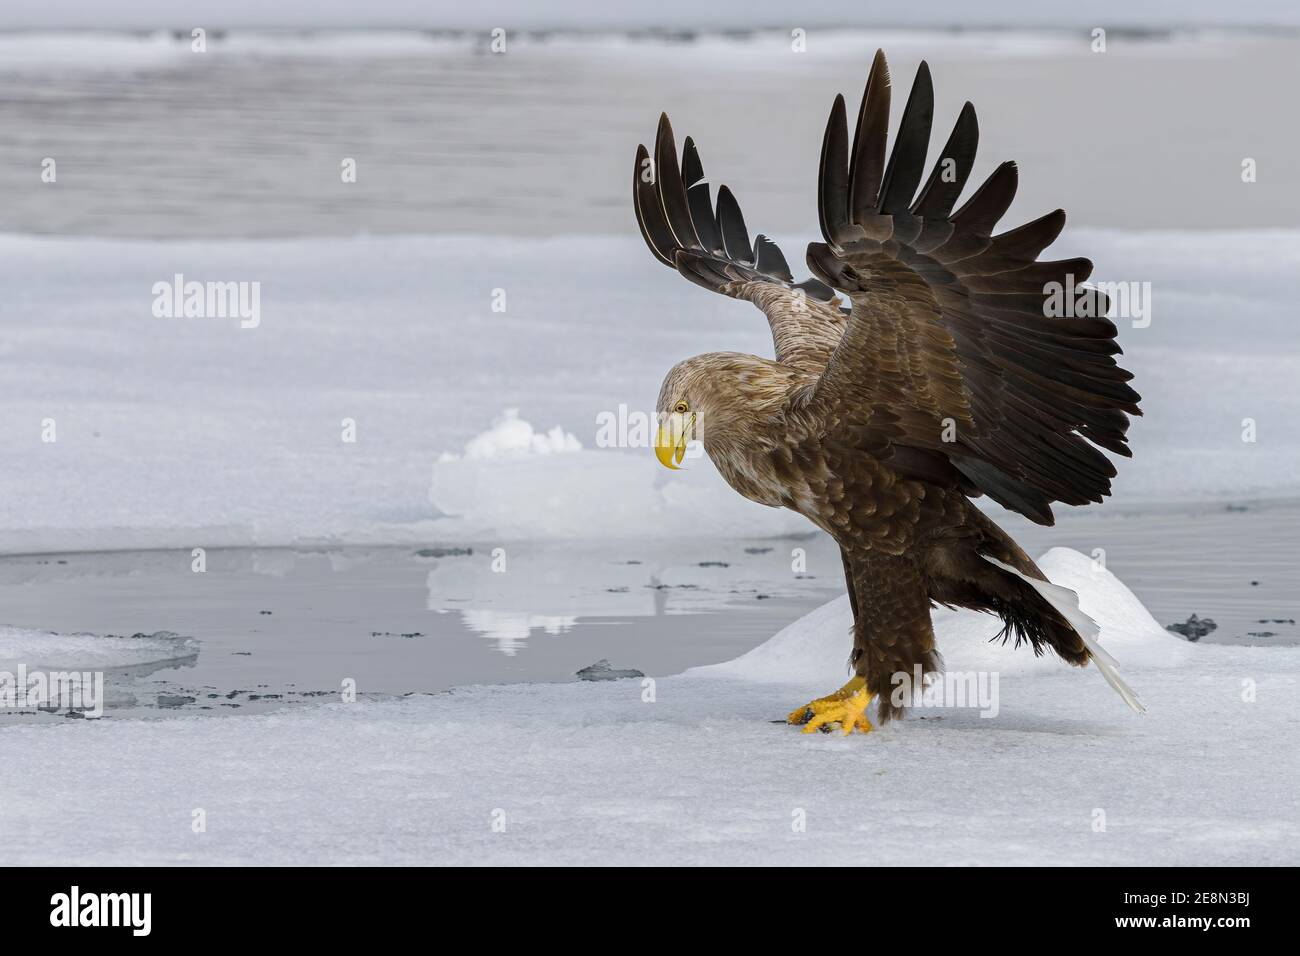 Aquila dalla coda bianca (Haliaetus albicilla) atterraggio su ghiaccio di mare con le ali estese guardando a sinistra Foto Stock